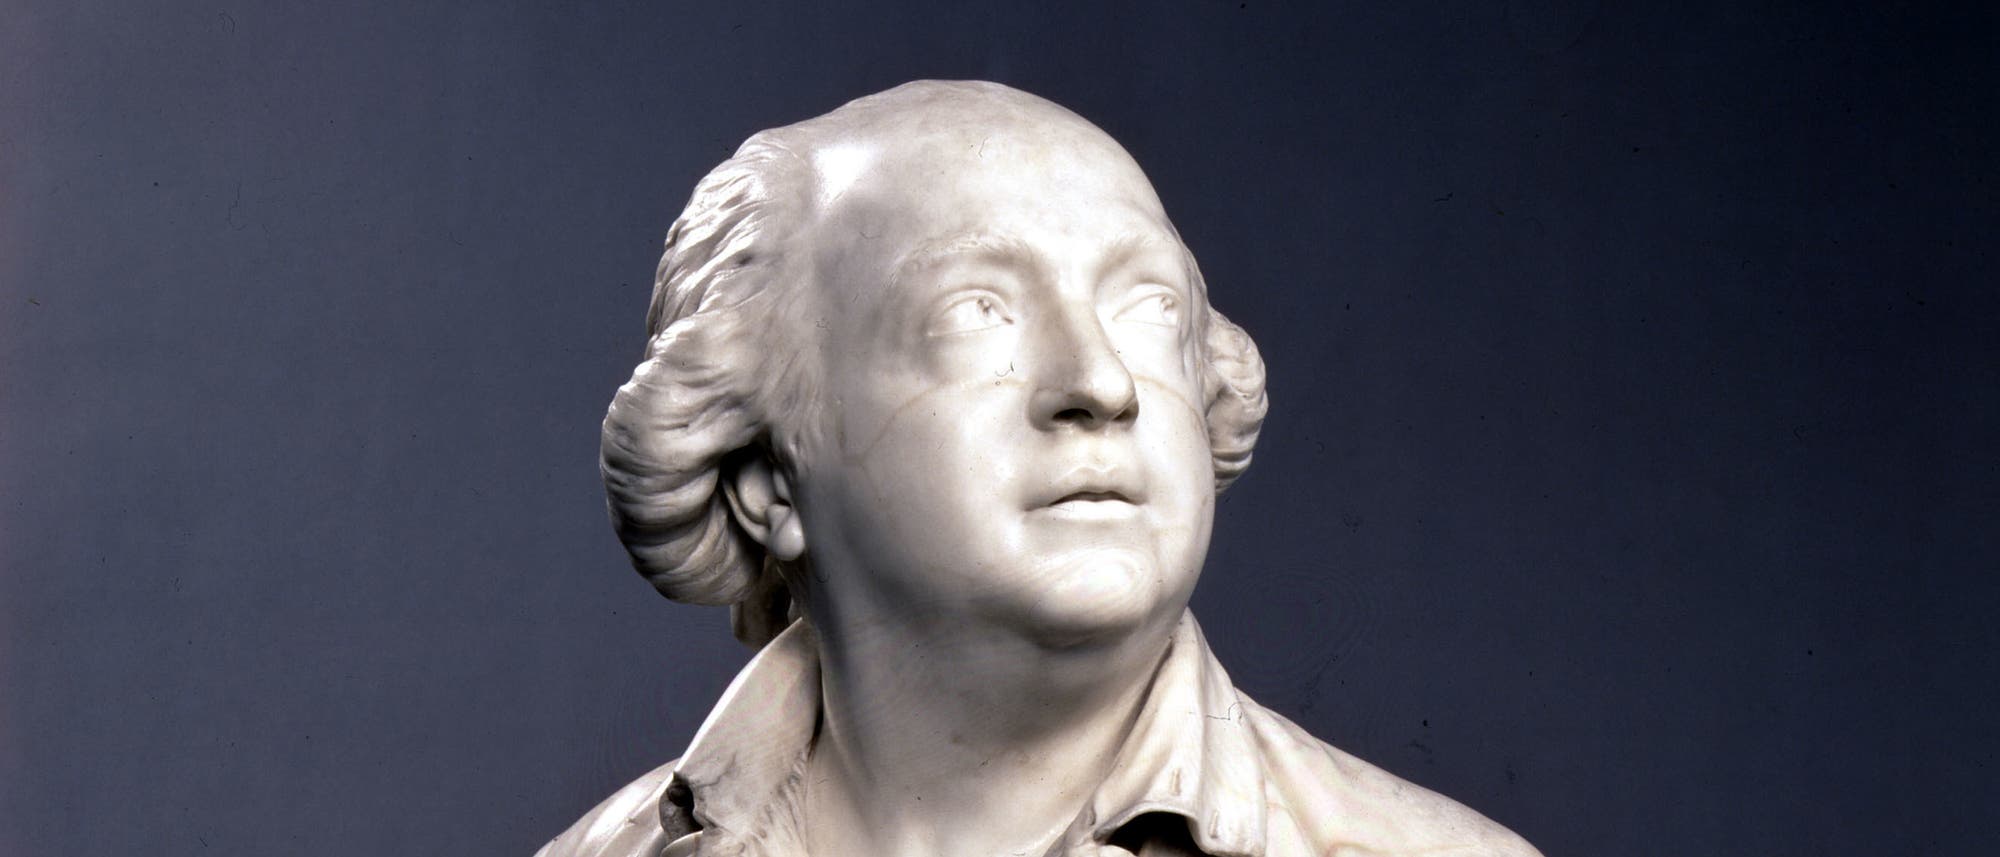 Büste des Grafen Cagliostro, die Skulptur entstand um 1790